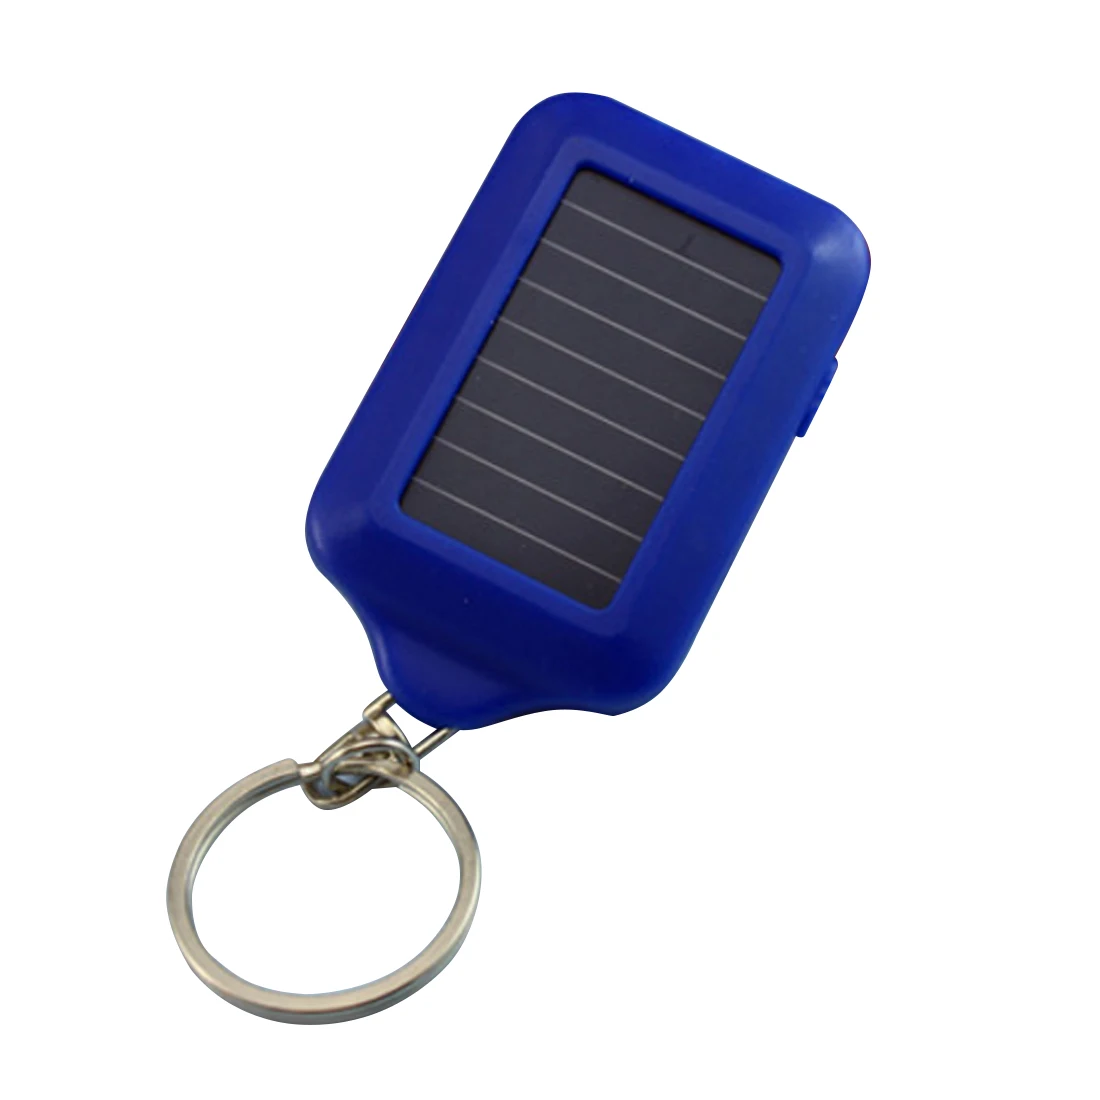 Портативный супер мини-светильник светодиодный брелок-фонарик фонарь 3 светодиодный брелок лампа для подарка - Испускаемый цвет: Blue